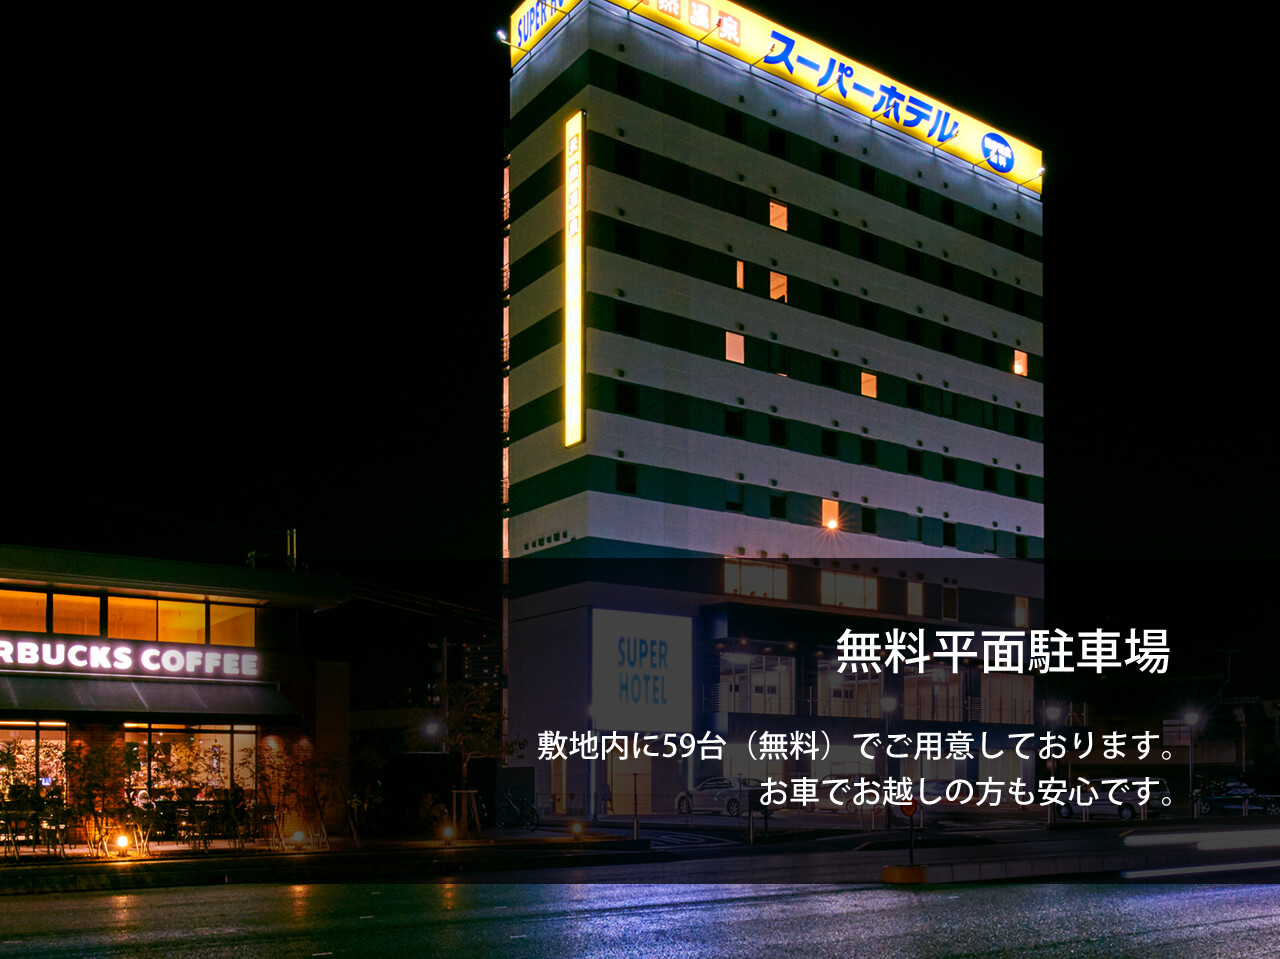 スーパーホテル滋賀・草津国道1号沿